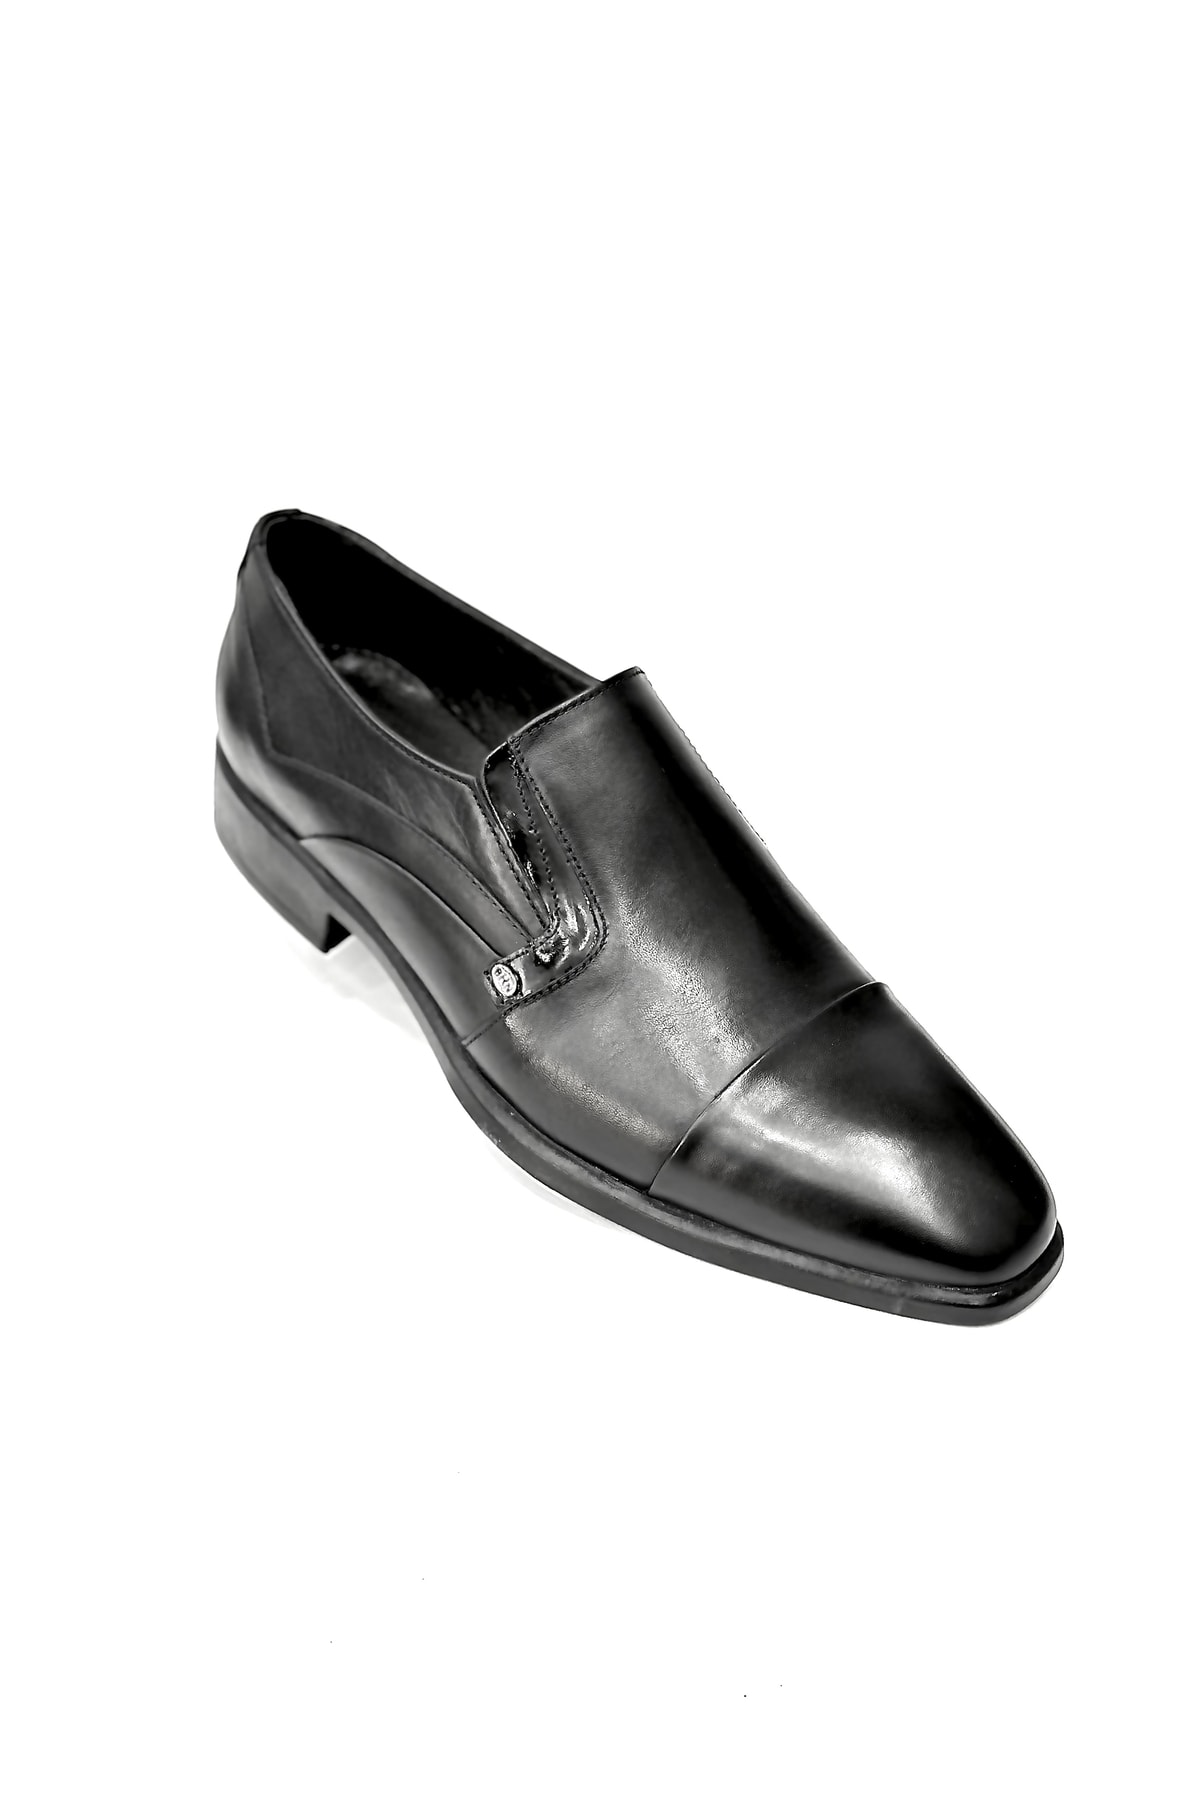 Berenni Erkek Günlük Klasik Rahat Ayakkabı